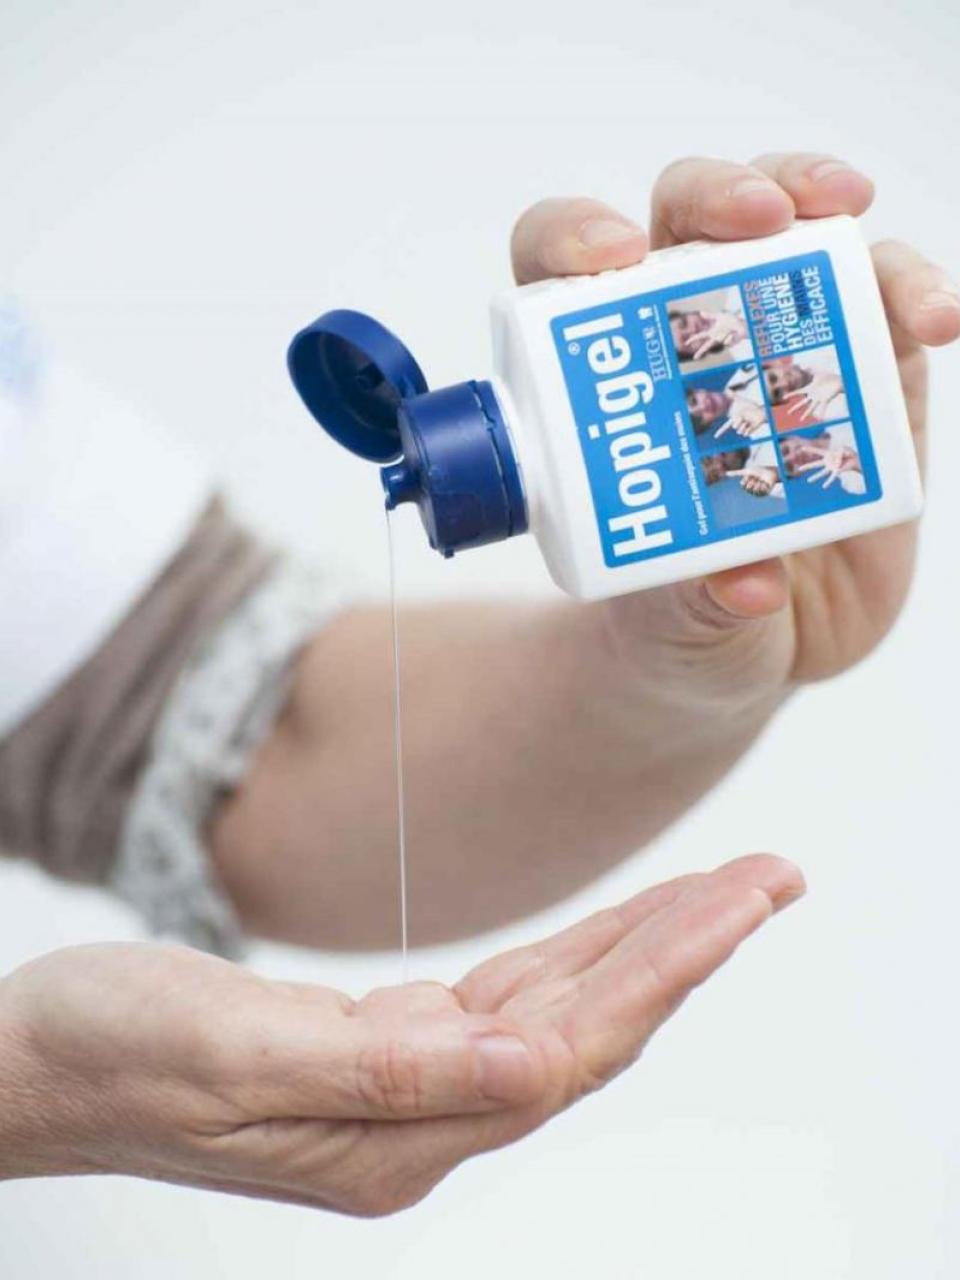 La solution hydroalcoolique qui a révolutionné la désinfection des mains en milieu médical © Julien Gregorio/phovea/HUG